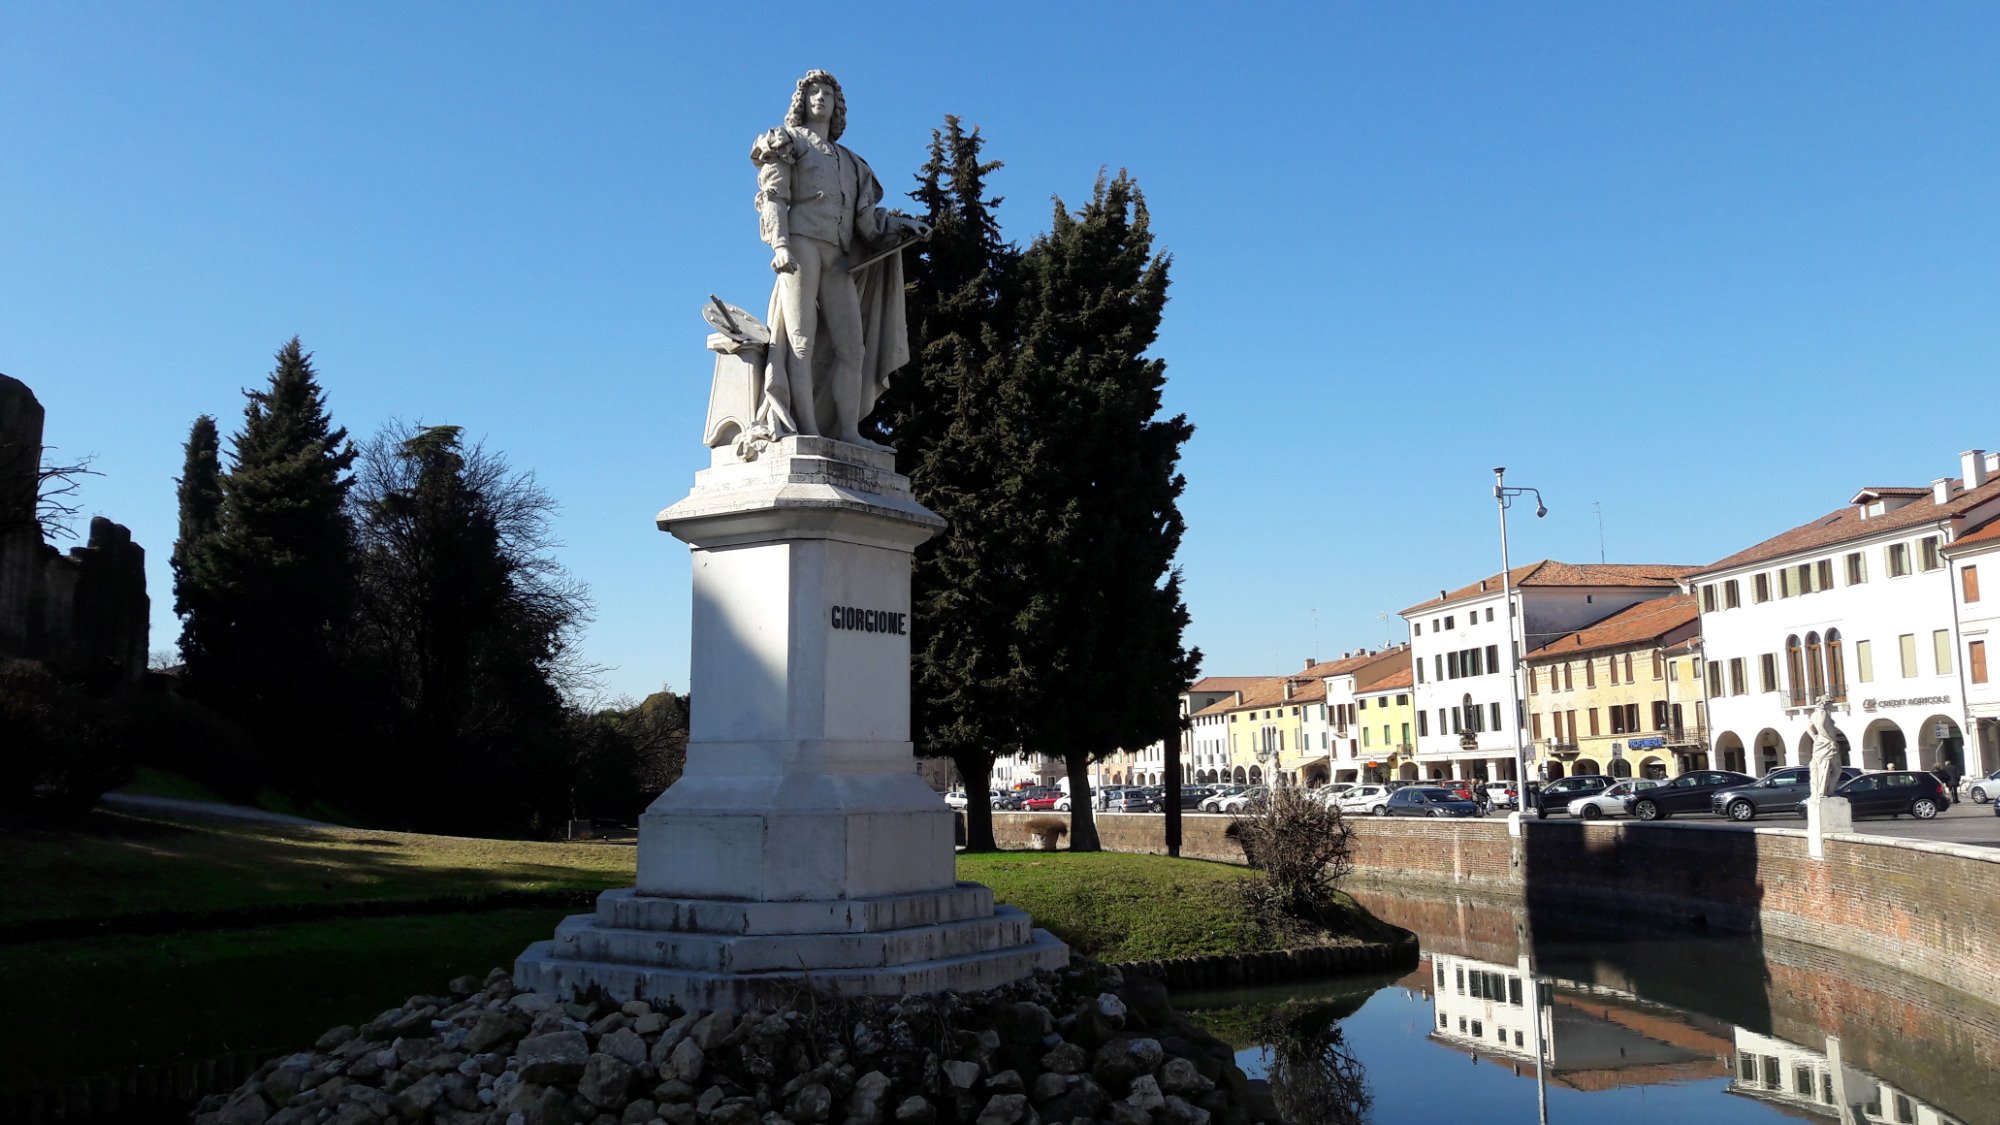 Piazza Giorgione